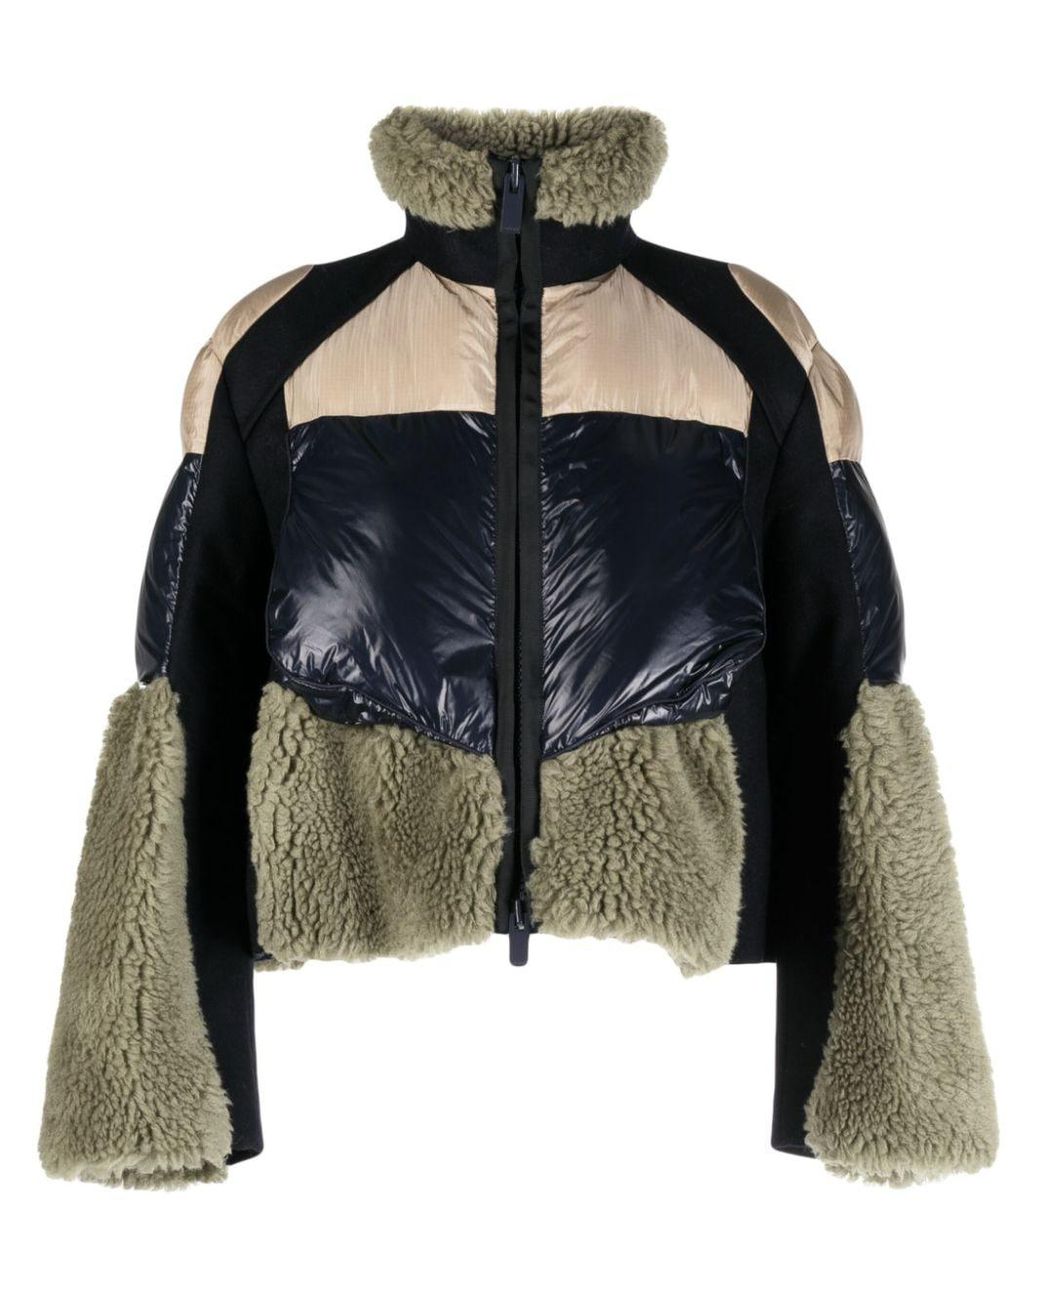 Designer Faux Fur & Shearling Jackets for Women on Sale - FARFETCH